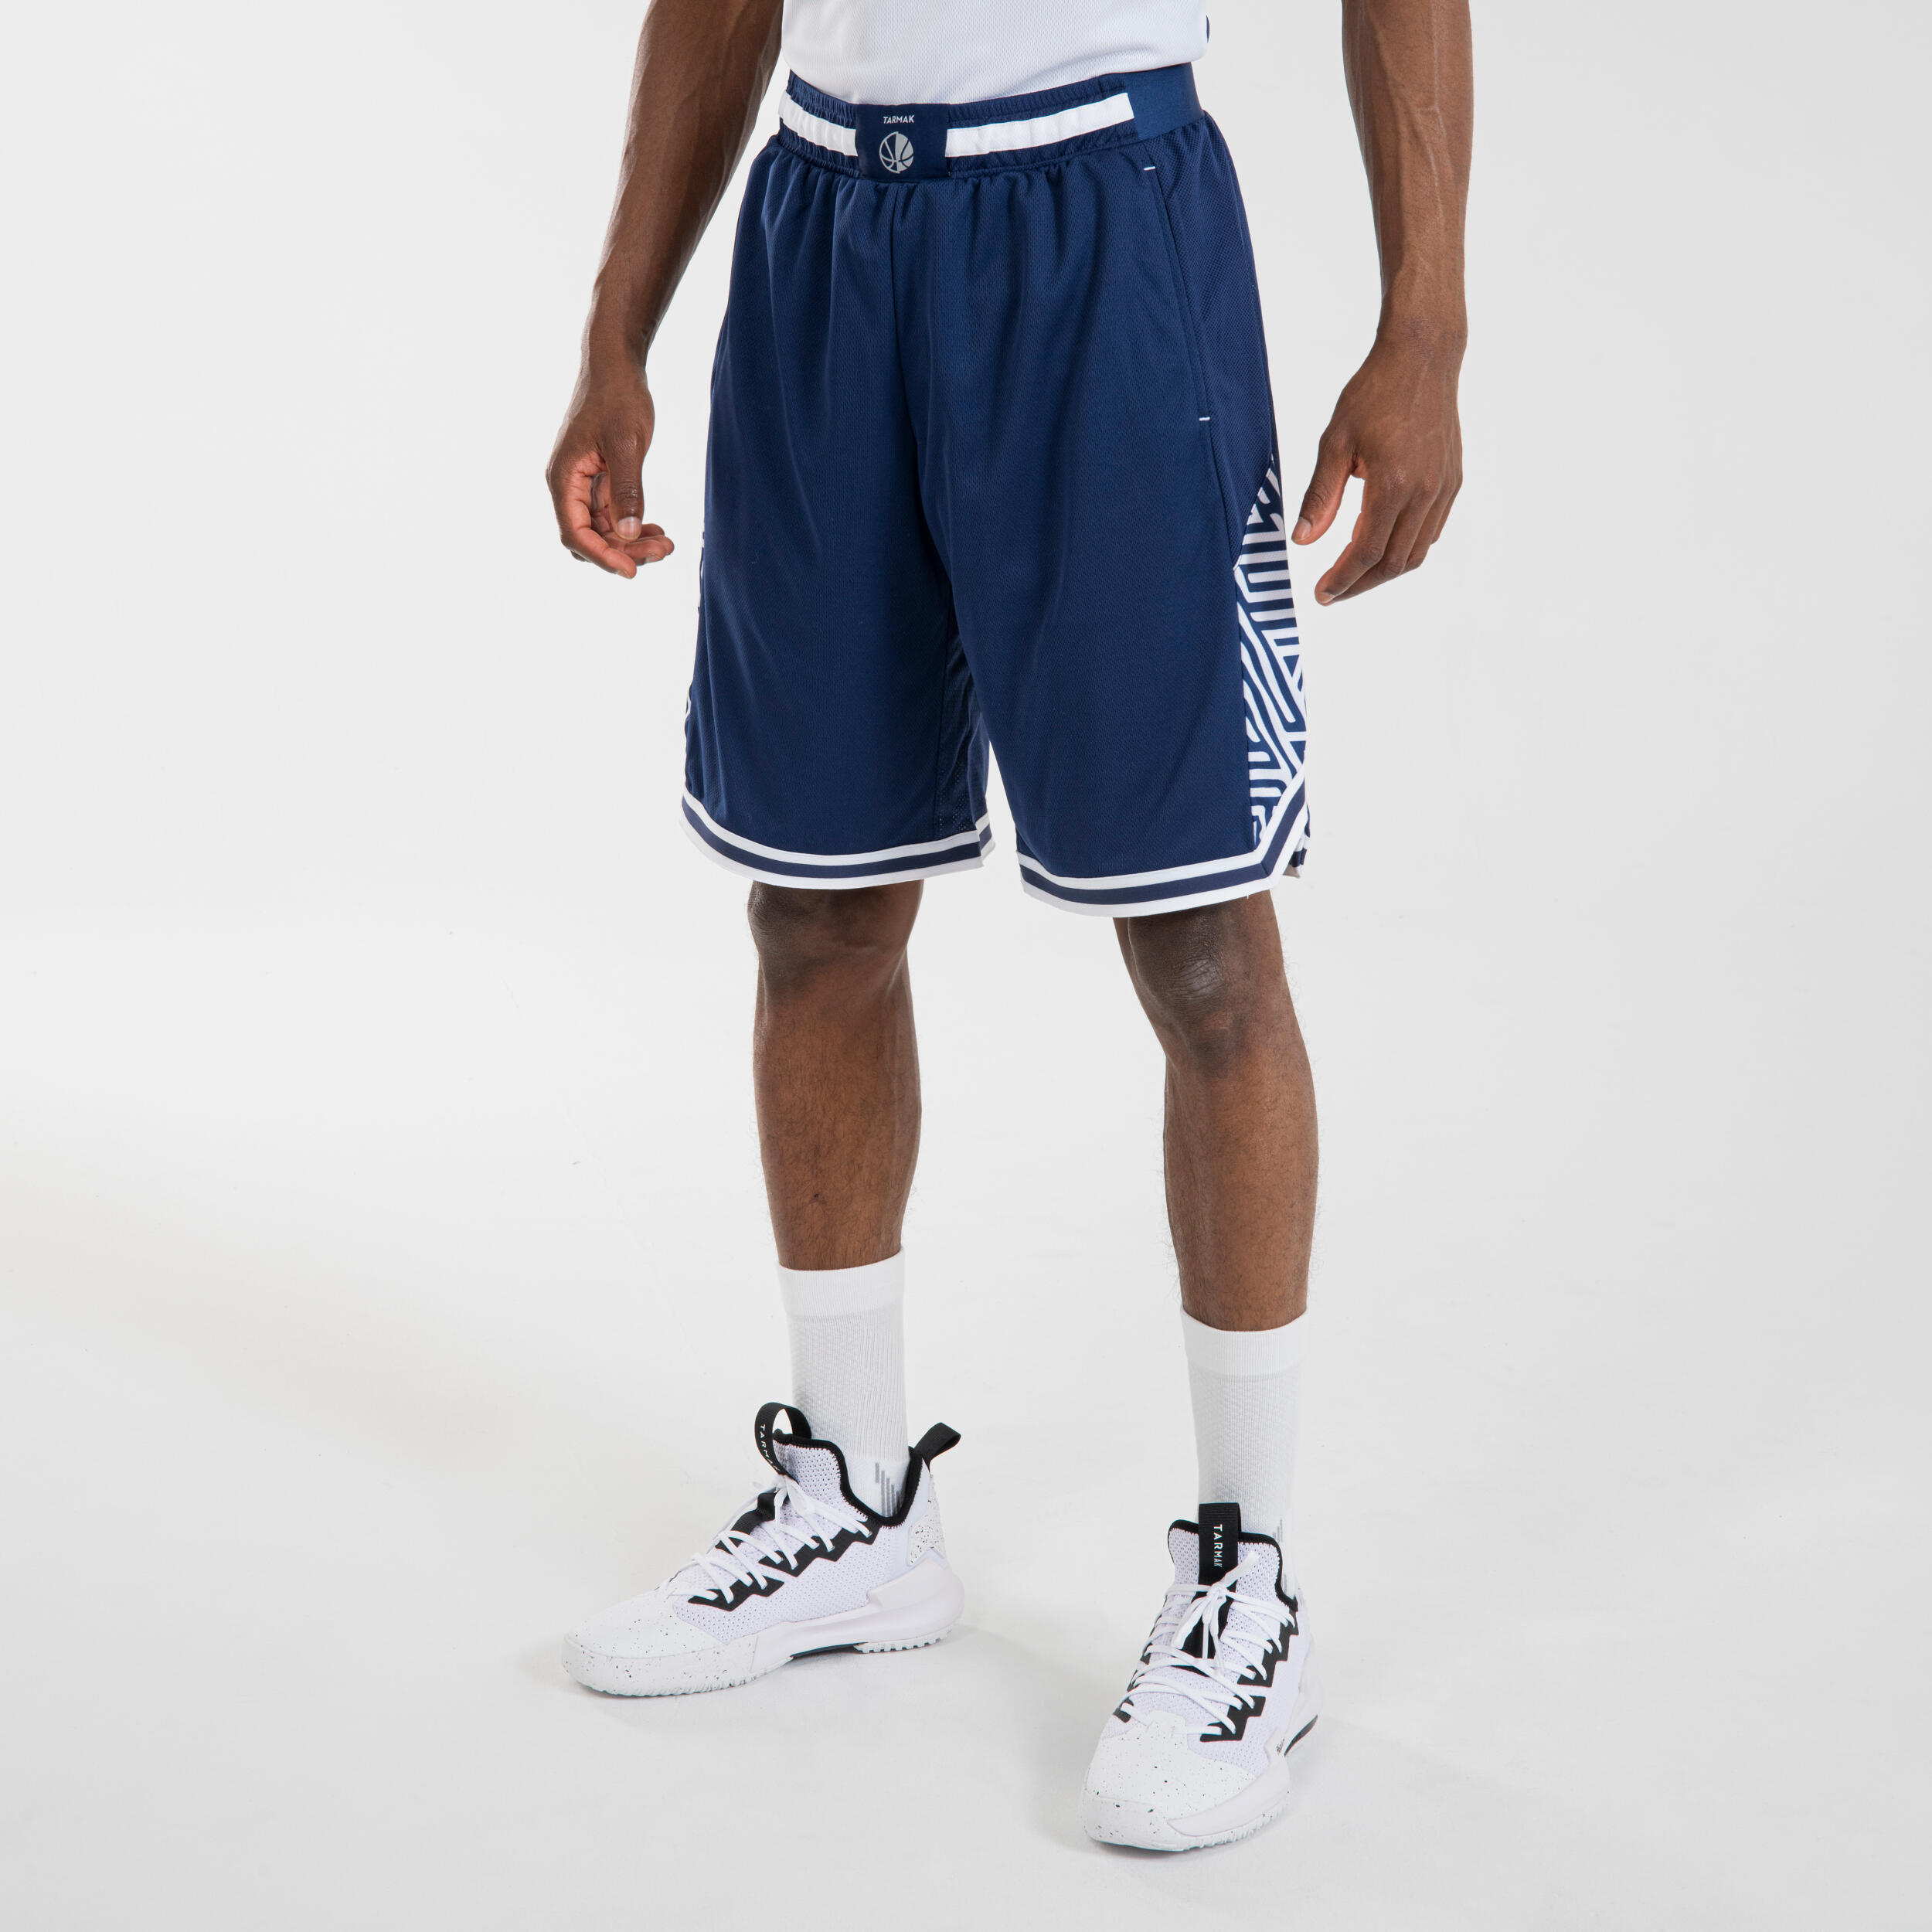 Men's/Women's Reversible Basketball Shorts SH500R - White/Navy 3/6